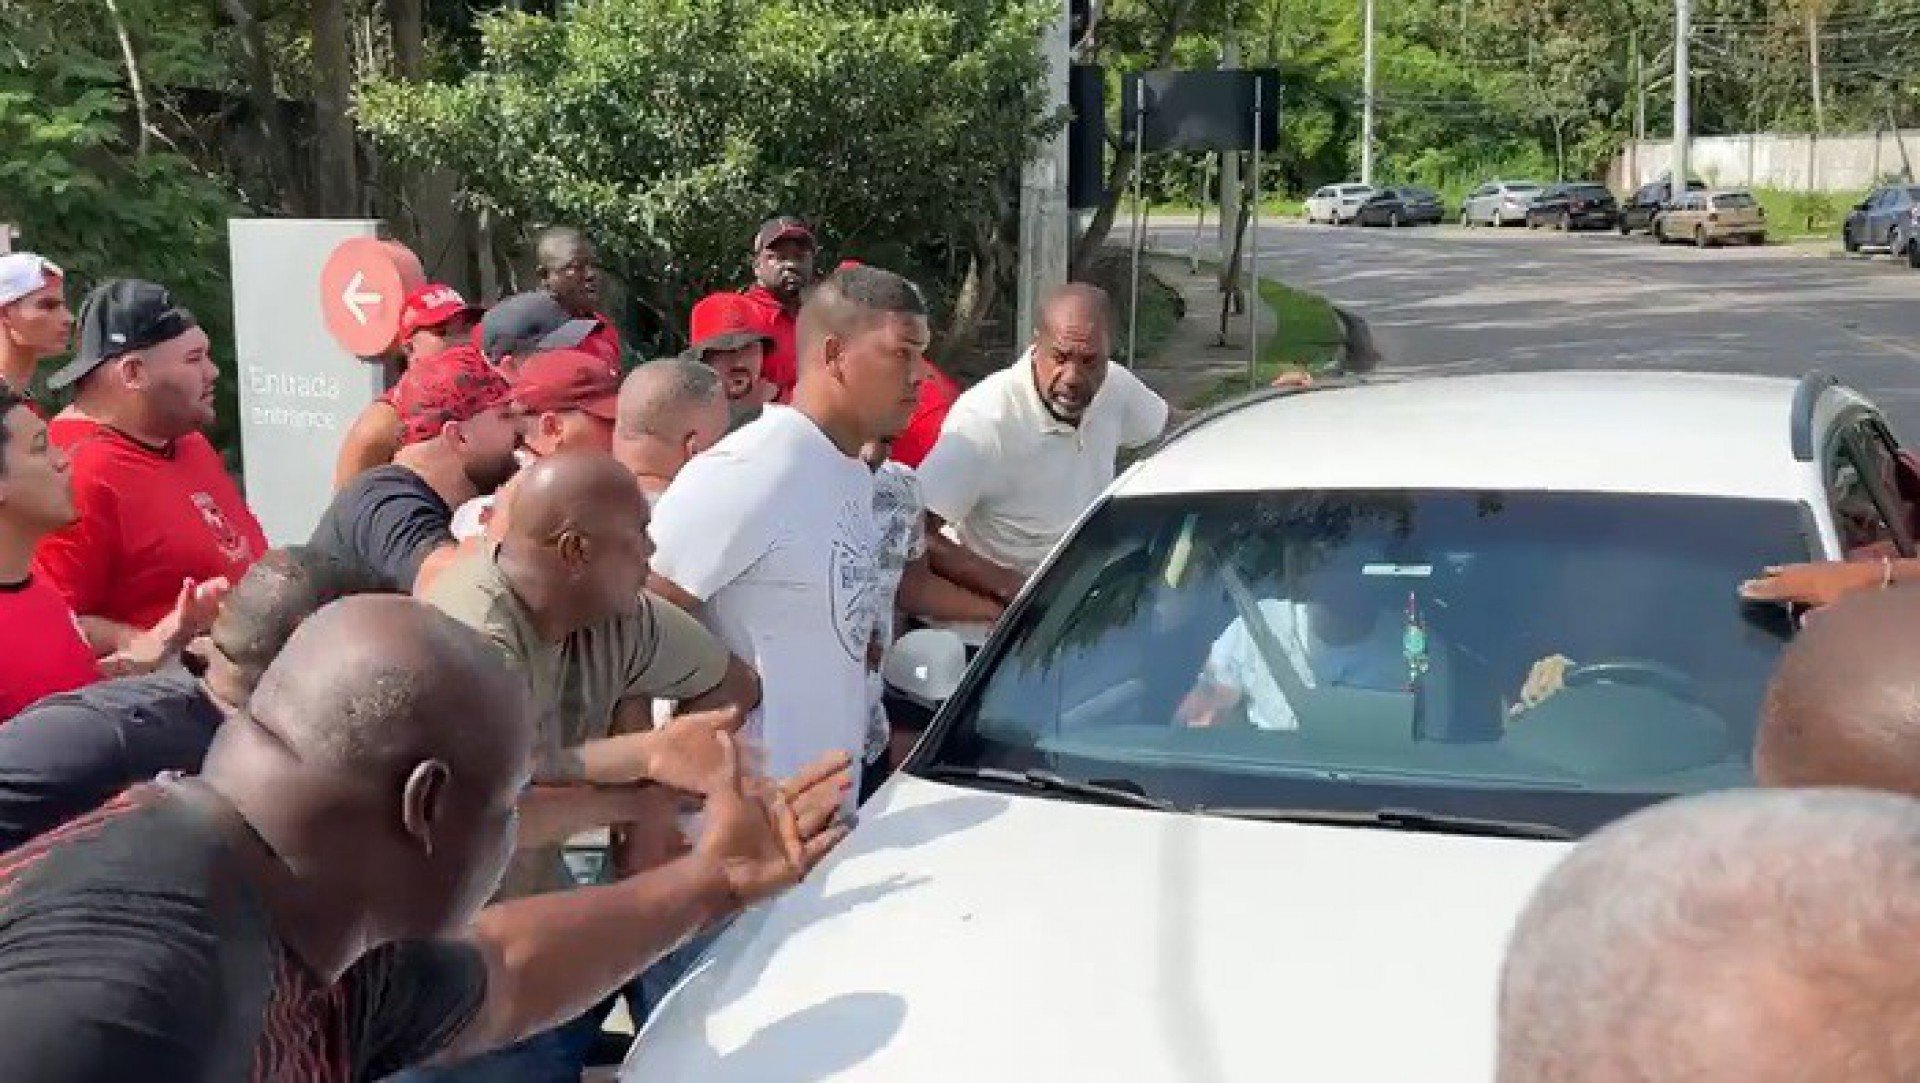 Torcedores do Flamengo comparecem ao Ninho em protesto - Reprodução